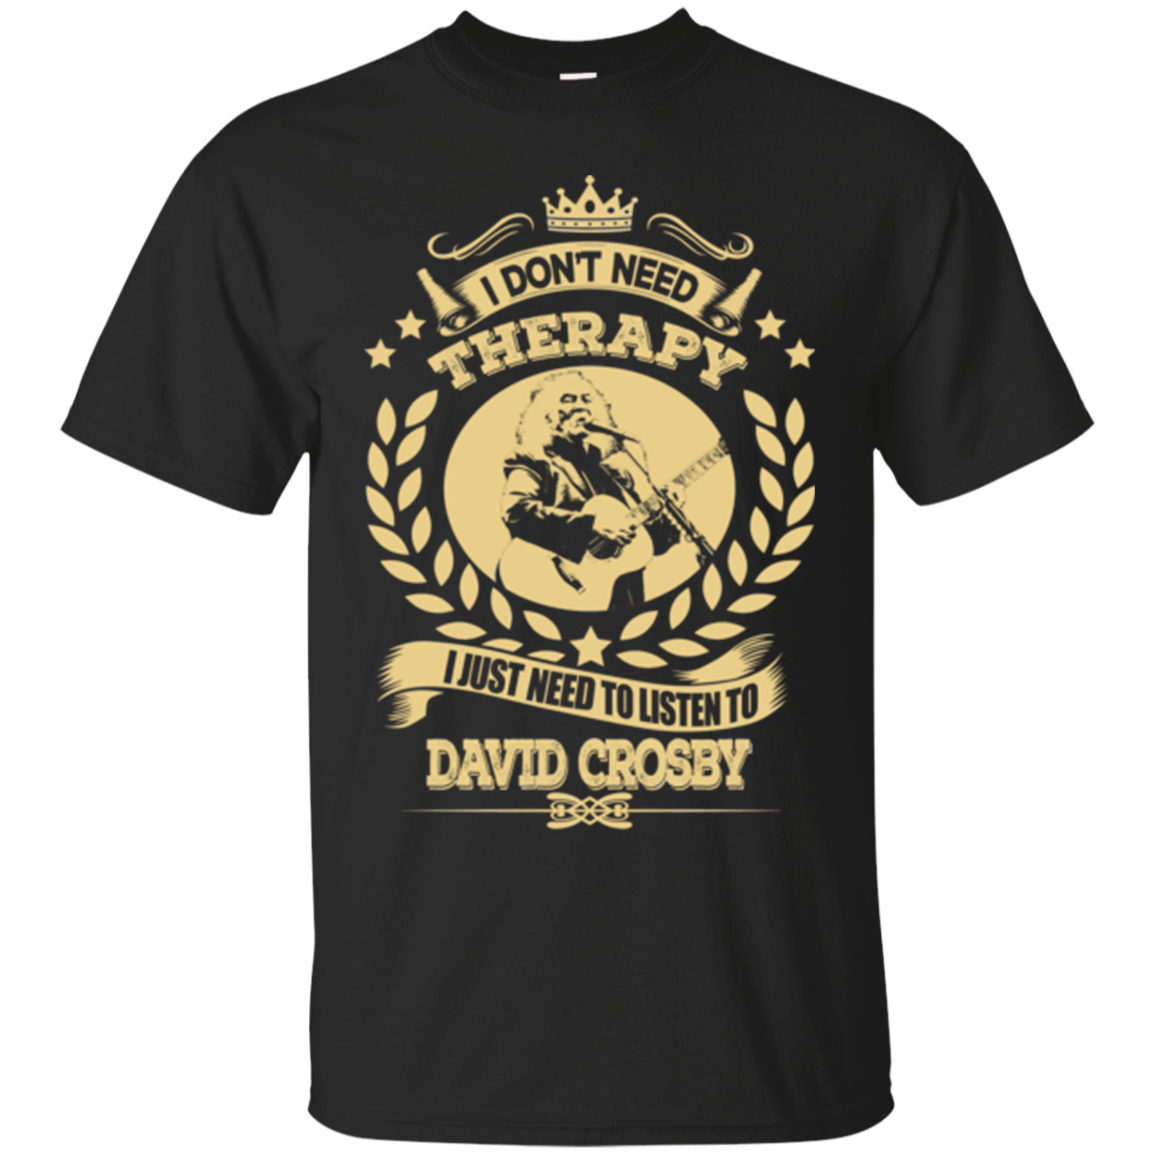 David Crosby Shirts I Don't Need Therapy - Teesmiley